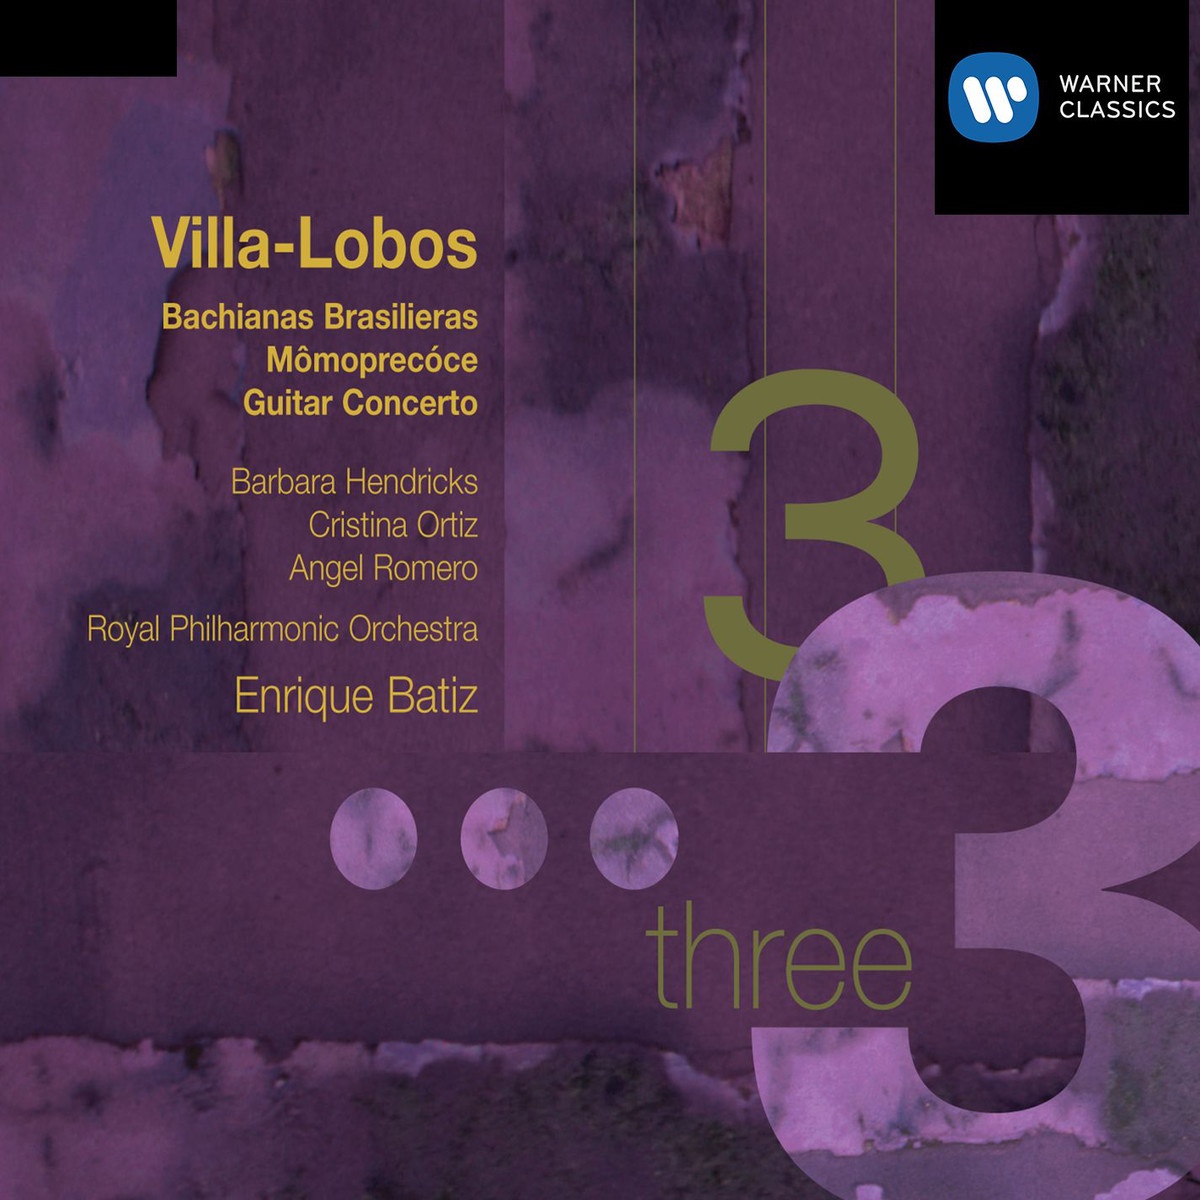 Concerto for guitar & small orchestra: First movement: Allegro preciso